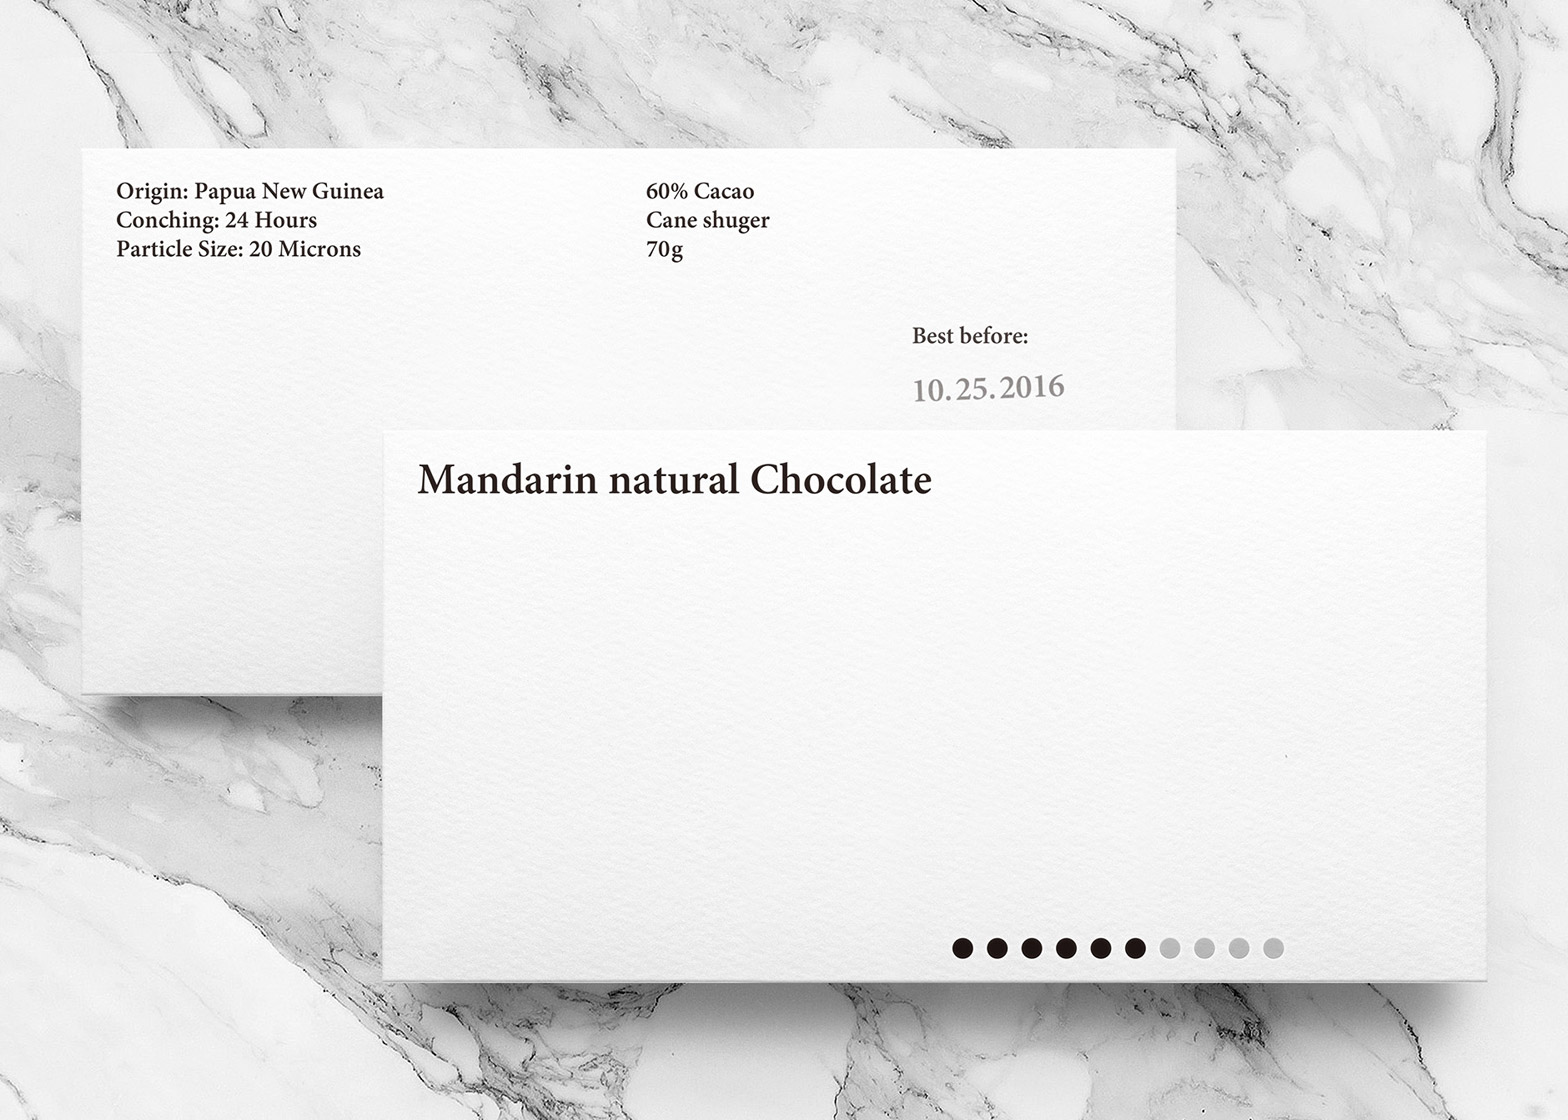 mandarin-natural-chocolate-yuta-takahashi-branding-packaging-design_dezeen_1568_1